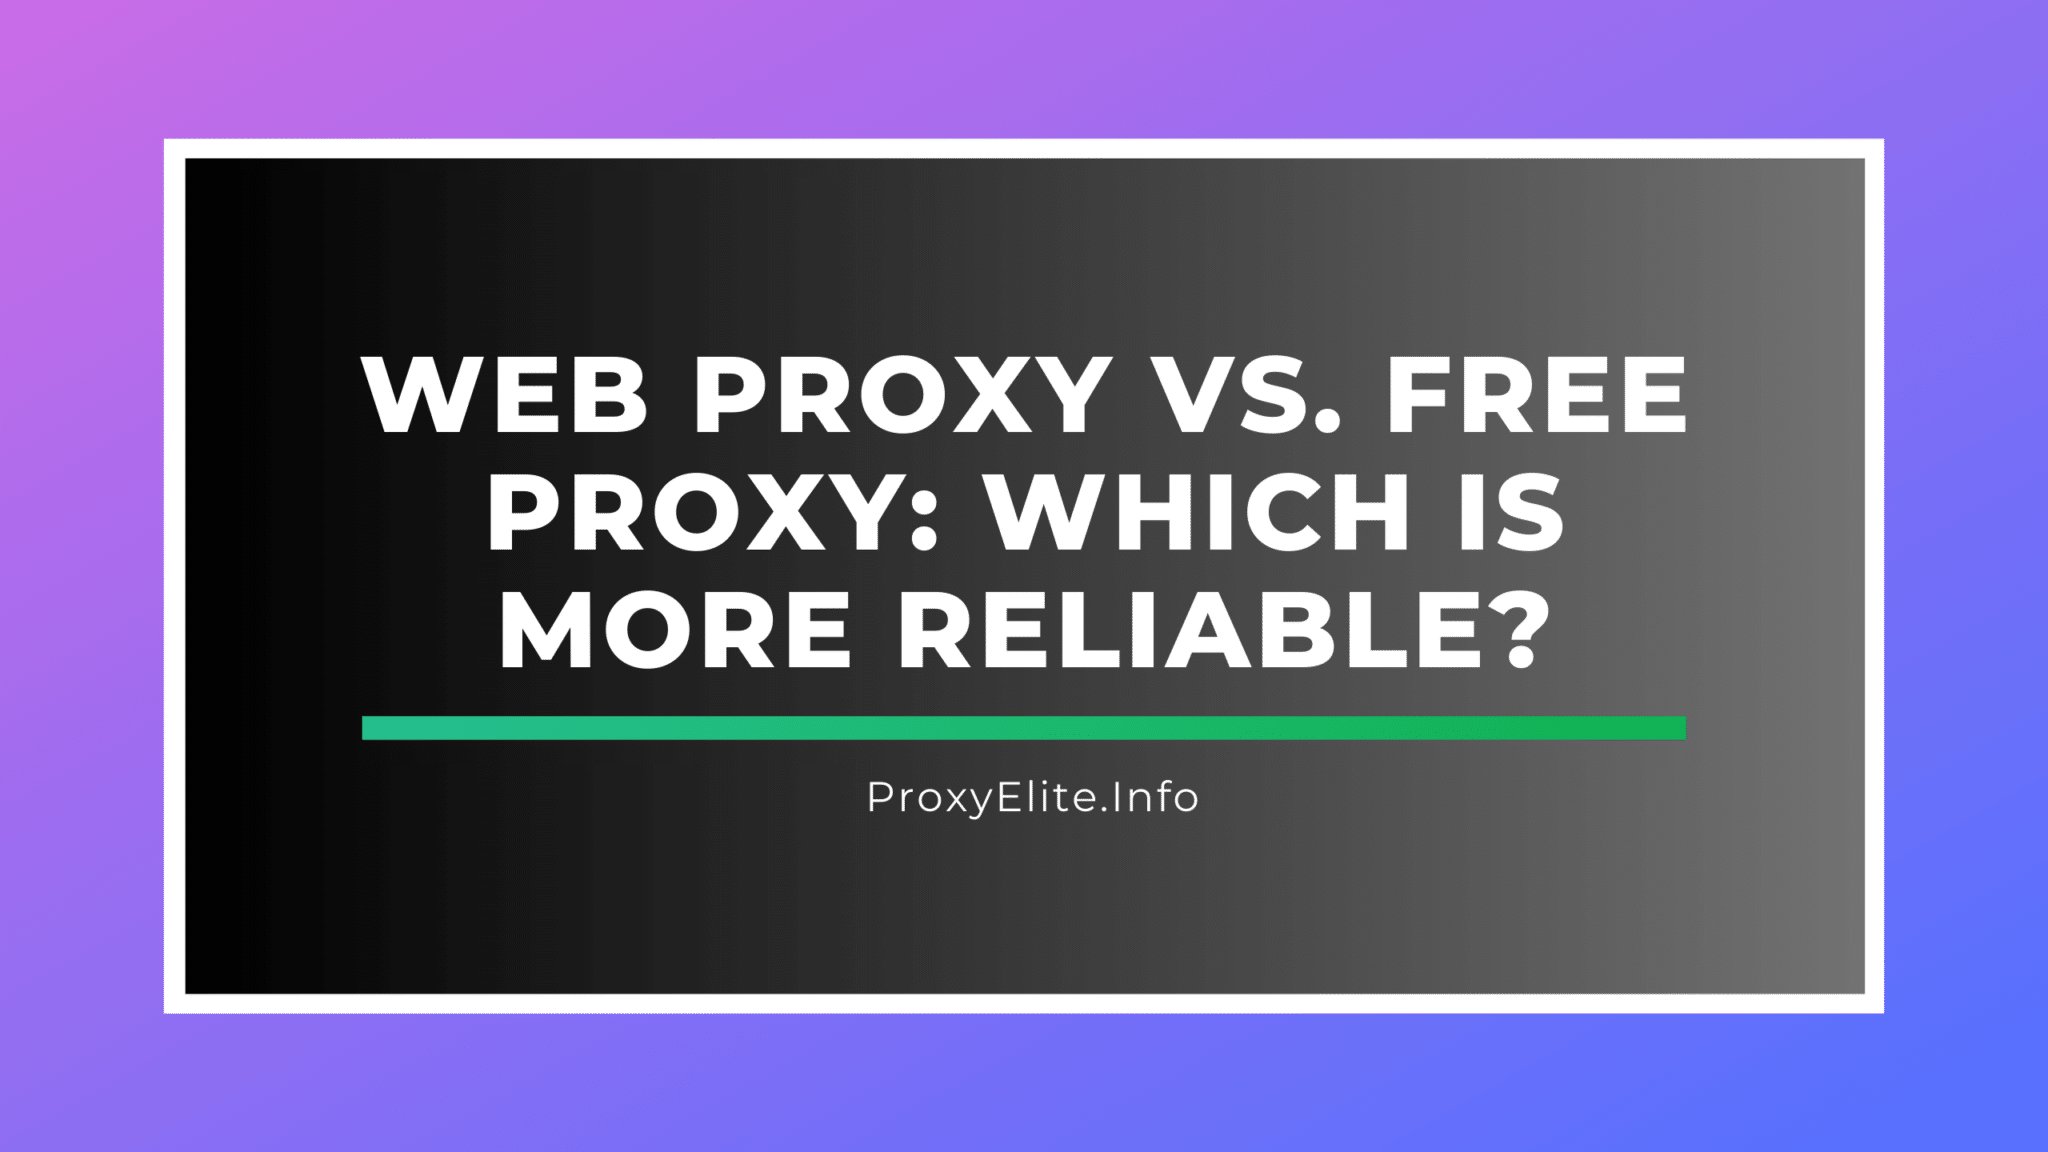 Proxy da Web versus proxy gratuito: qual é mais confiável?